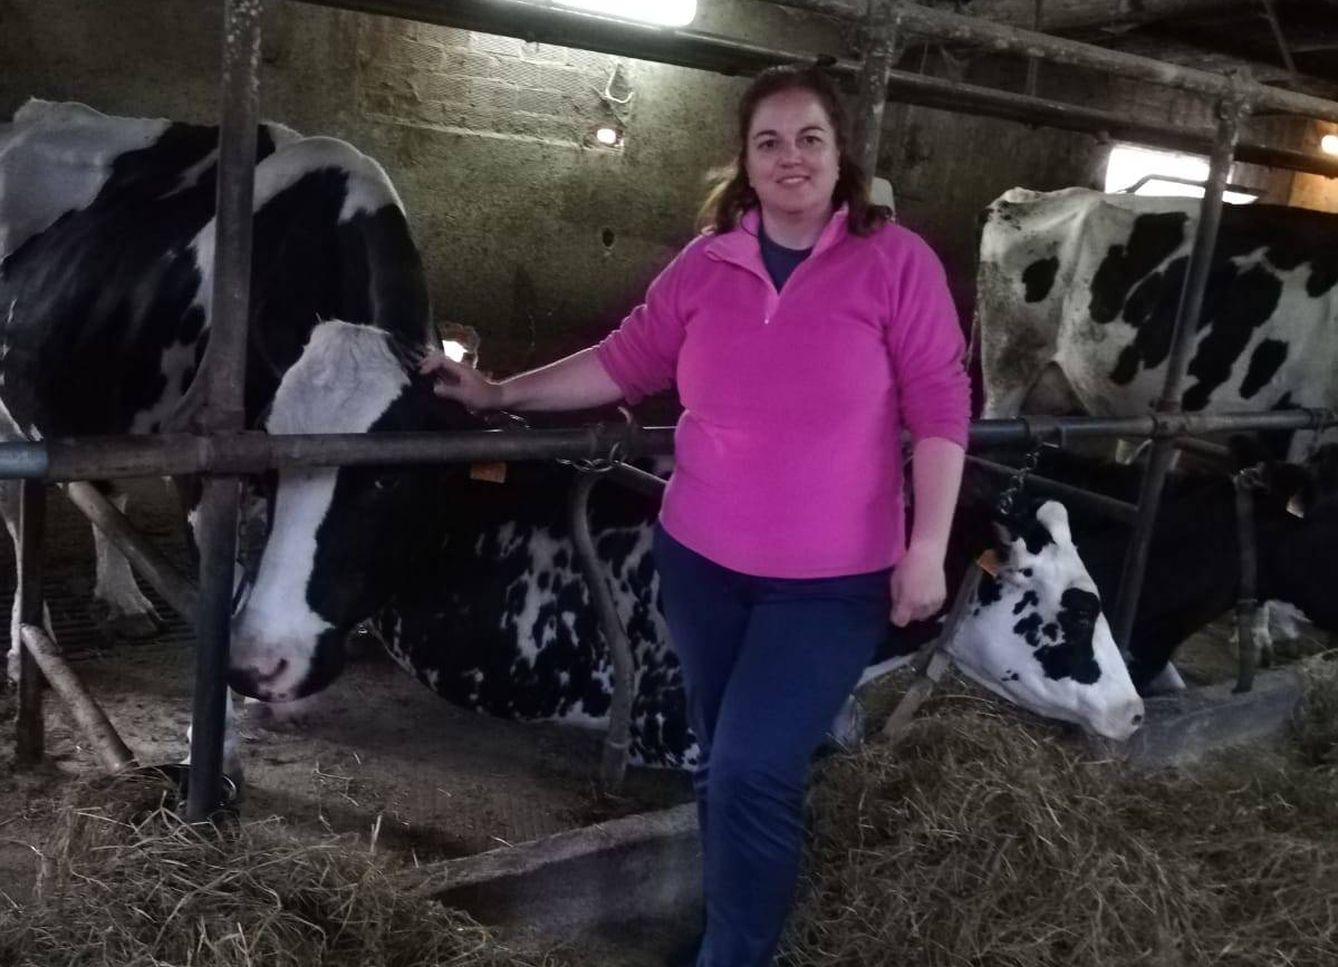  Montserrat Fernández cuida de su ganado en Tineo (Asturias). (Foto cedida)